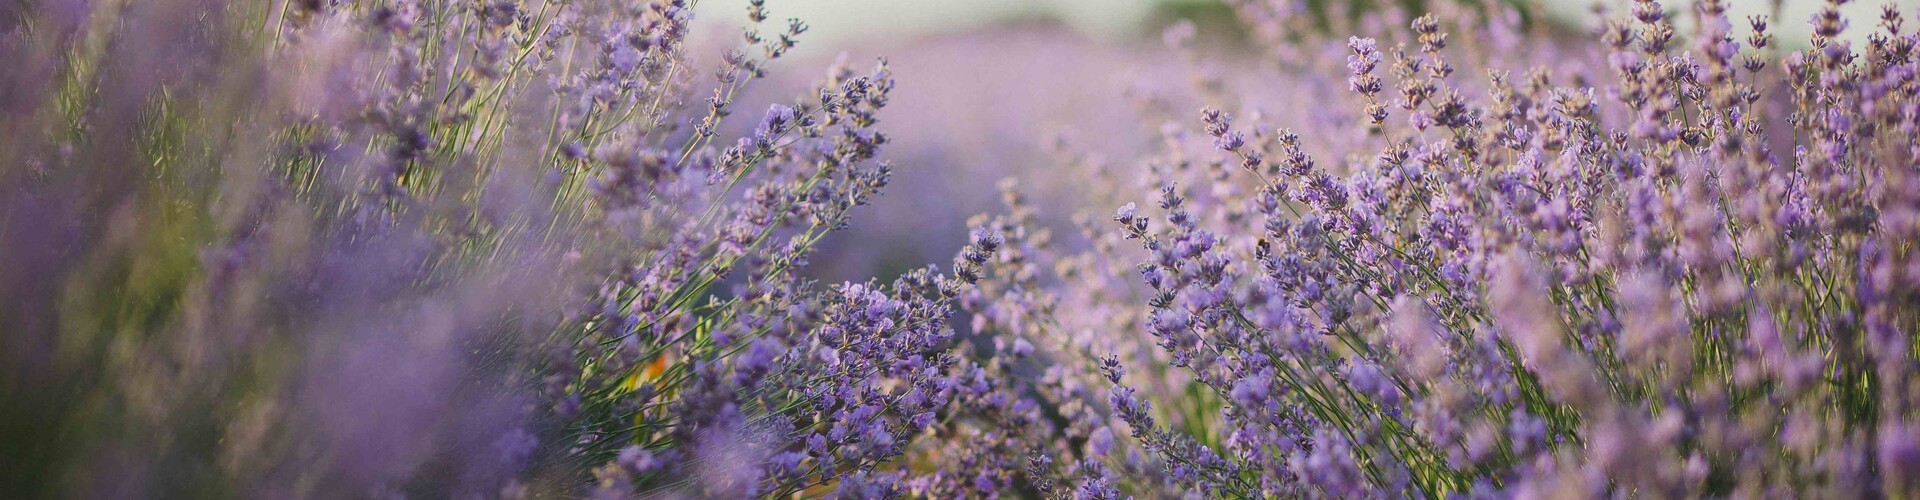 Lavendel: alle feiten en fabels op een rijtje 